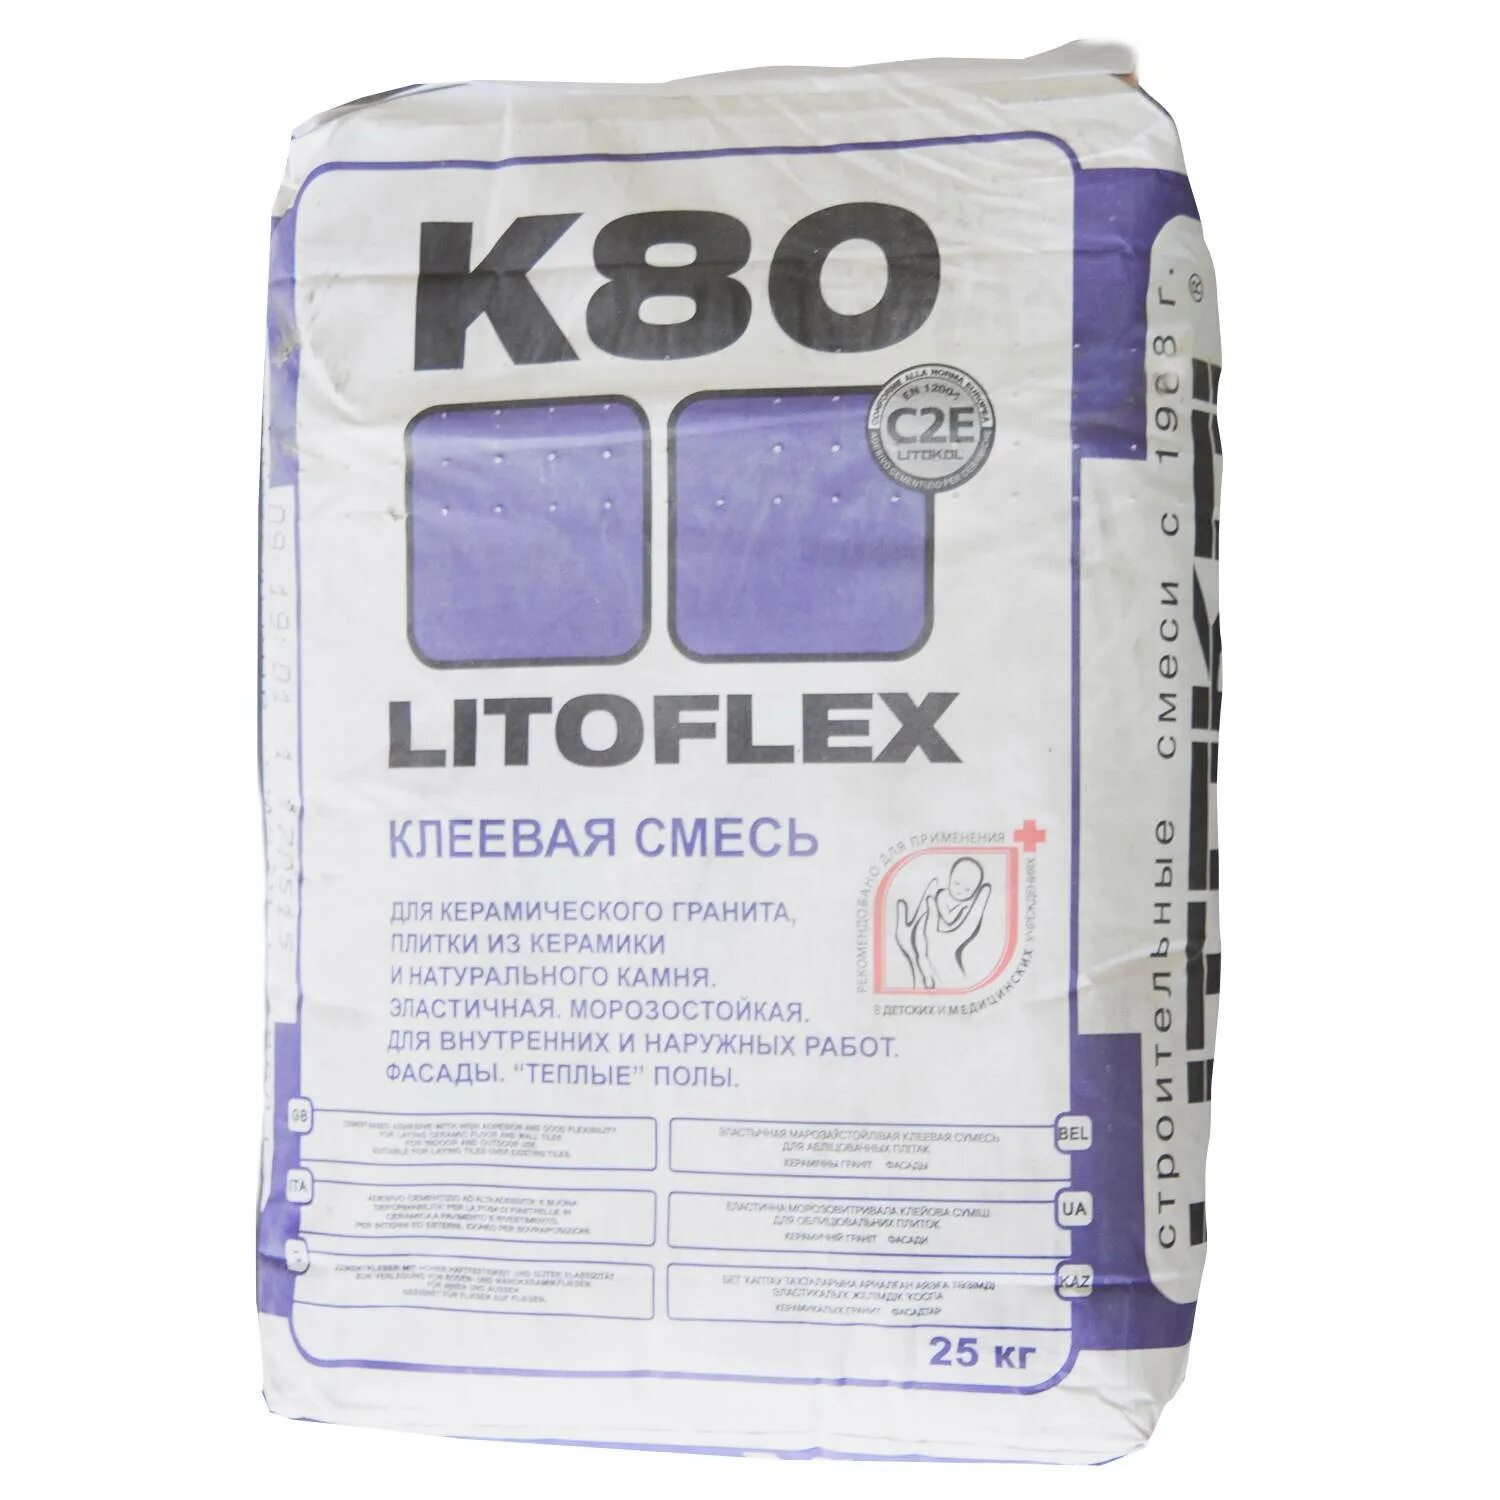 Litokol LITOFLEX k80, 25кг. Клей для плитки Литокол к80. Клей плиточный к80 Litokol. Литокол k80 25 кг.